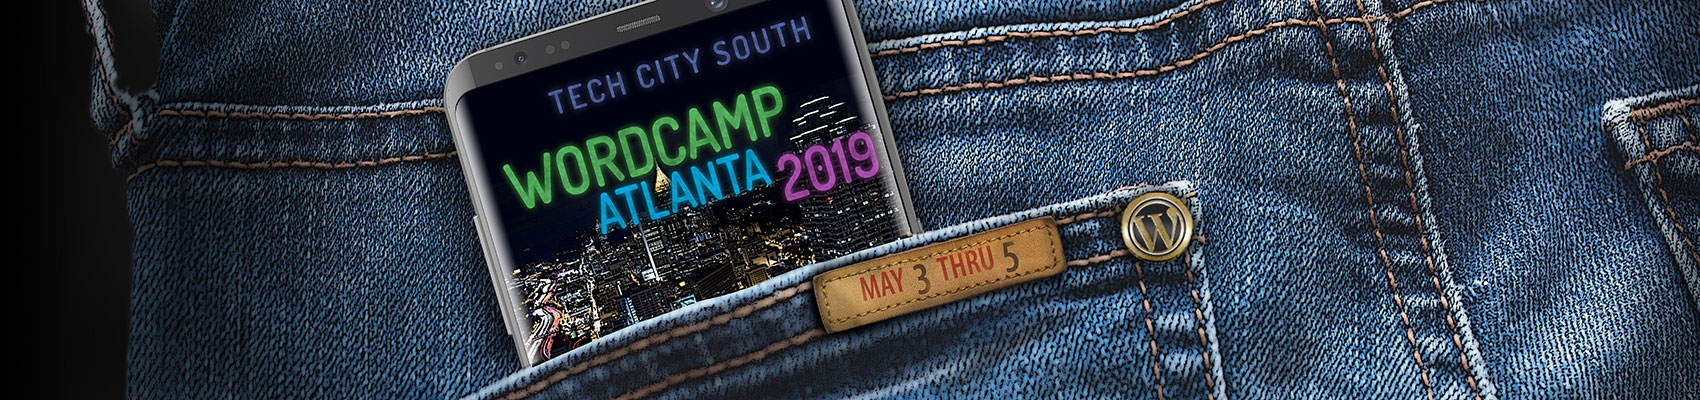 WordCamp Atlanta 2019 banner